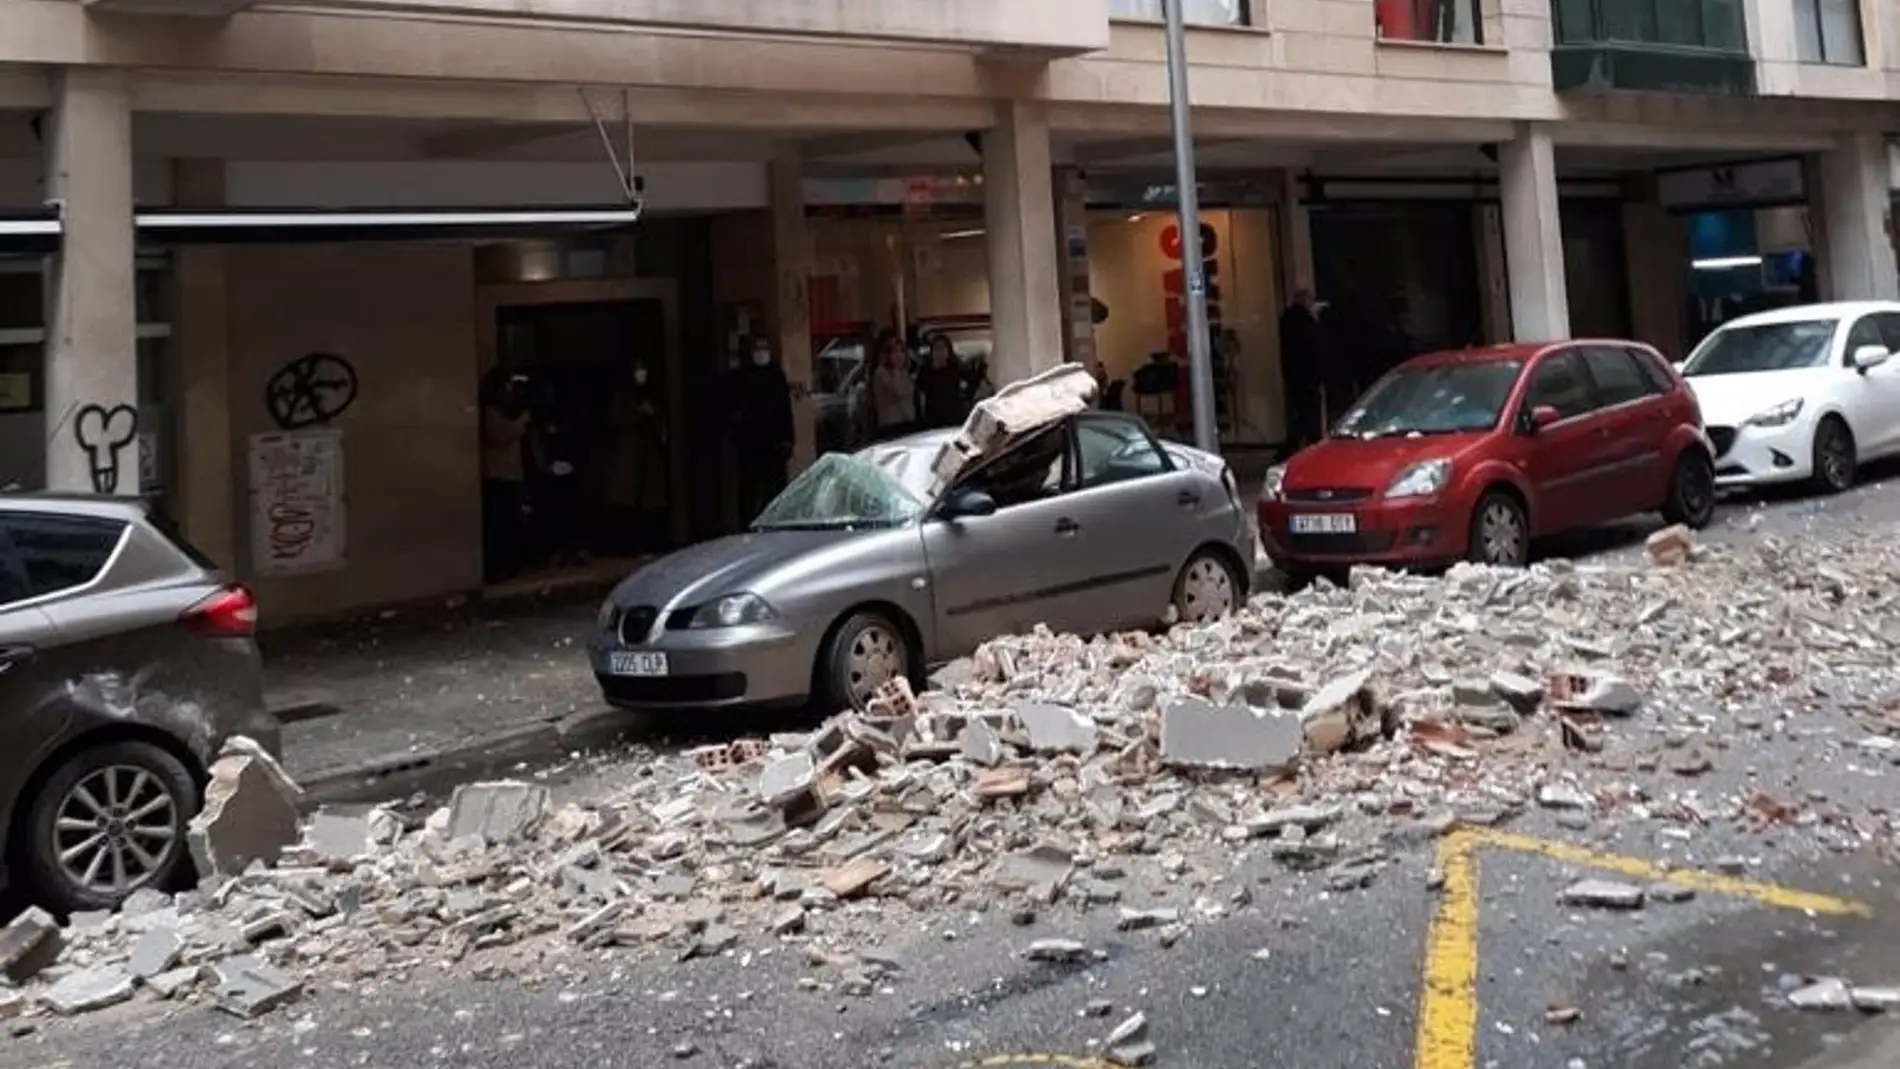 El viento provocado por la borrasca "Hortense" ha causado el derrumbre de parte de la fachada de un edificio de la calle Pere Dezcallar i Net de Palma